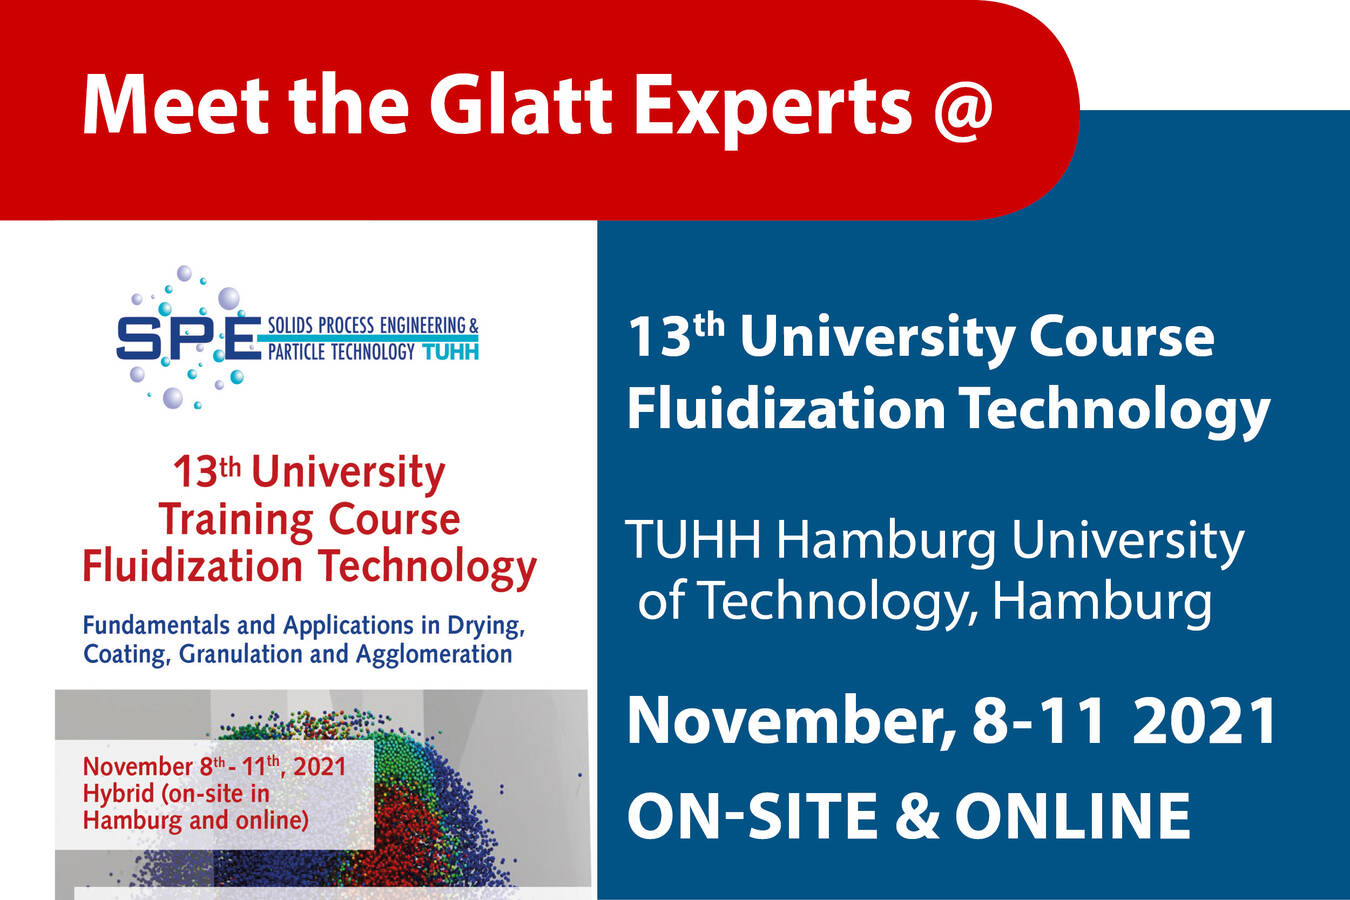 Treffen Sie die Glatt Experten zum 13. University Course Fluidization Technology, 8.-11. November, vor Ort in Hamburg und online